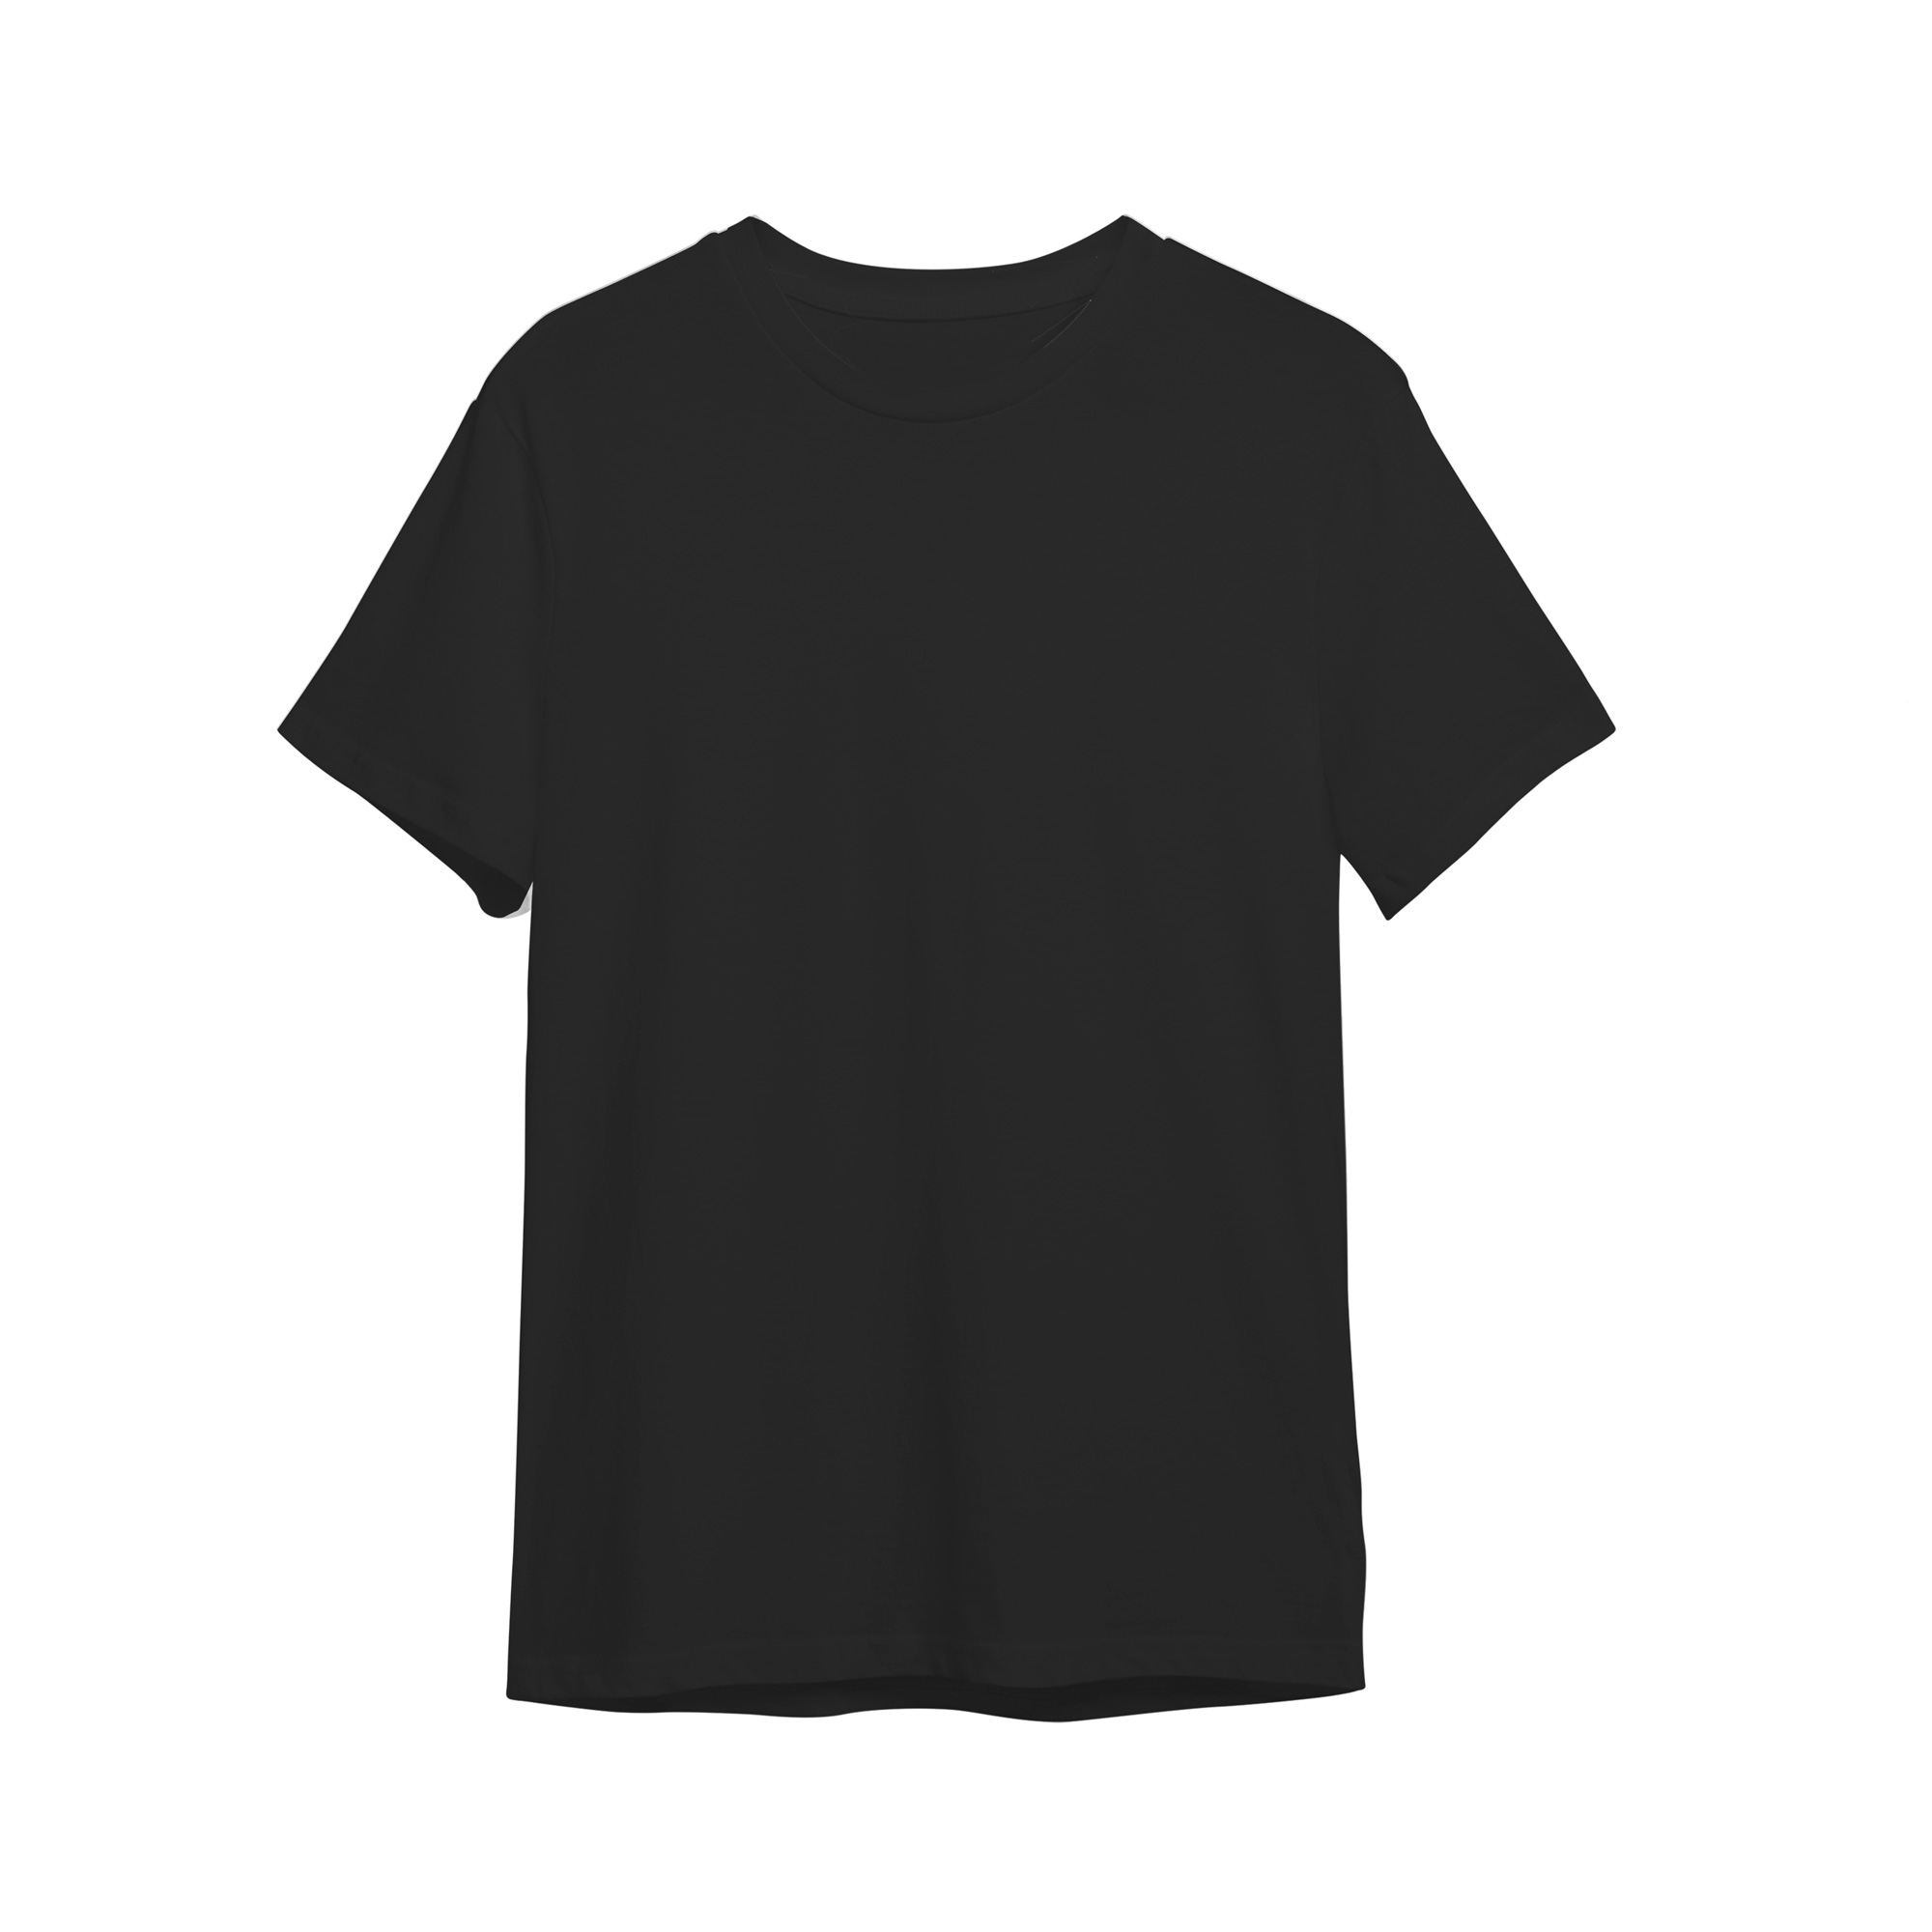 تی شرت آستین کوتاه بچگانه مدل ساده سوپر پنبه ای رنگ مشکی